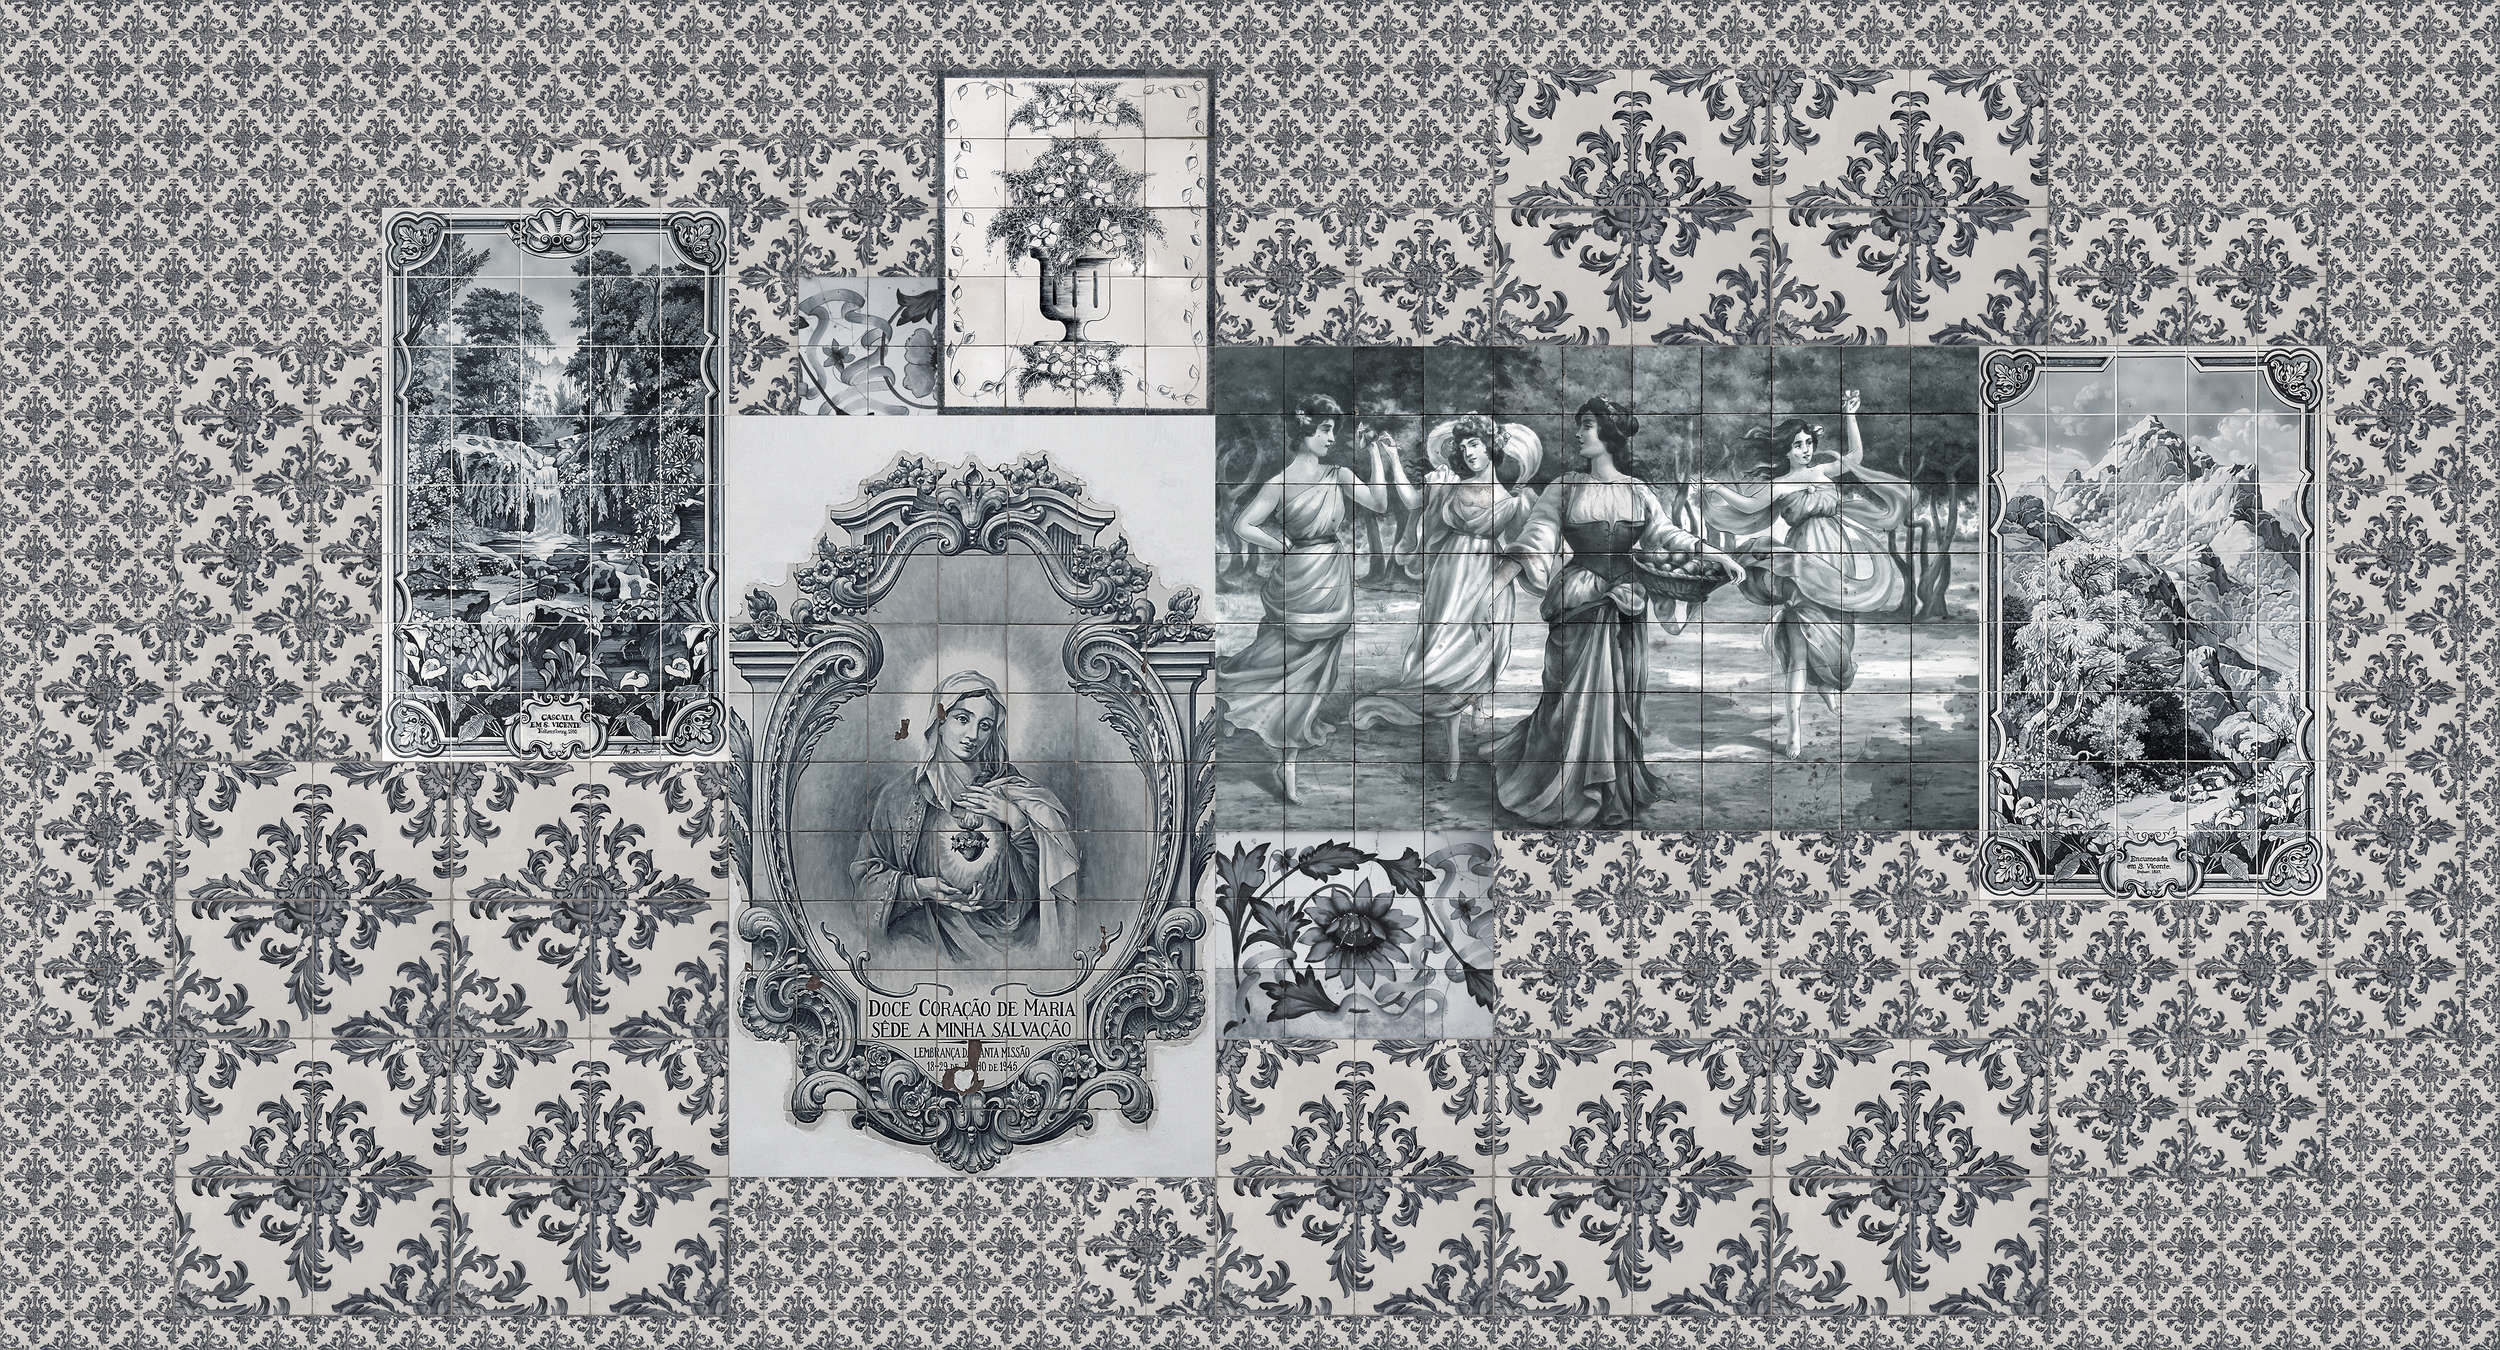             Azulejos 3 - Tile Collage Retro Style Wallpaper - Beige, Black | Premium Smooth Non-woven
        